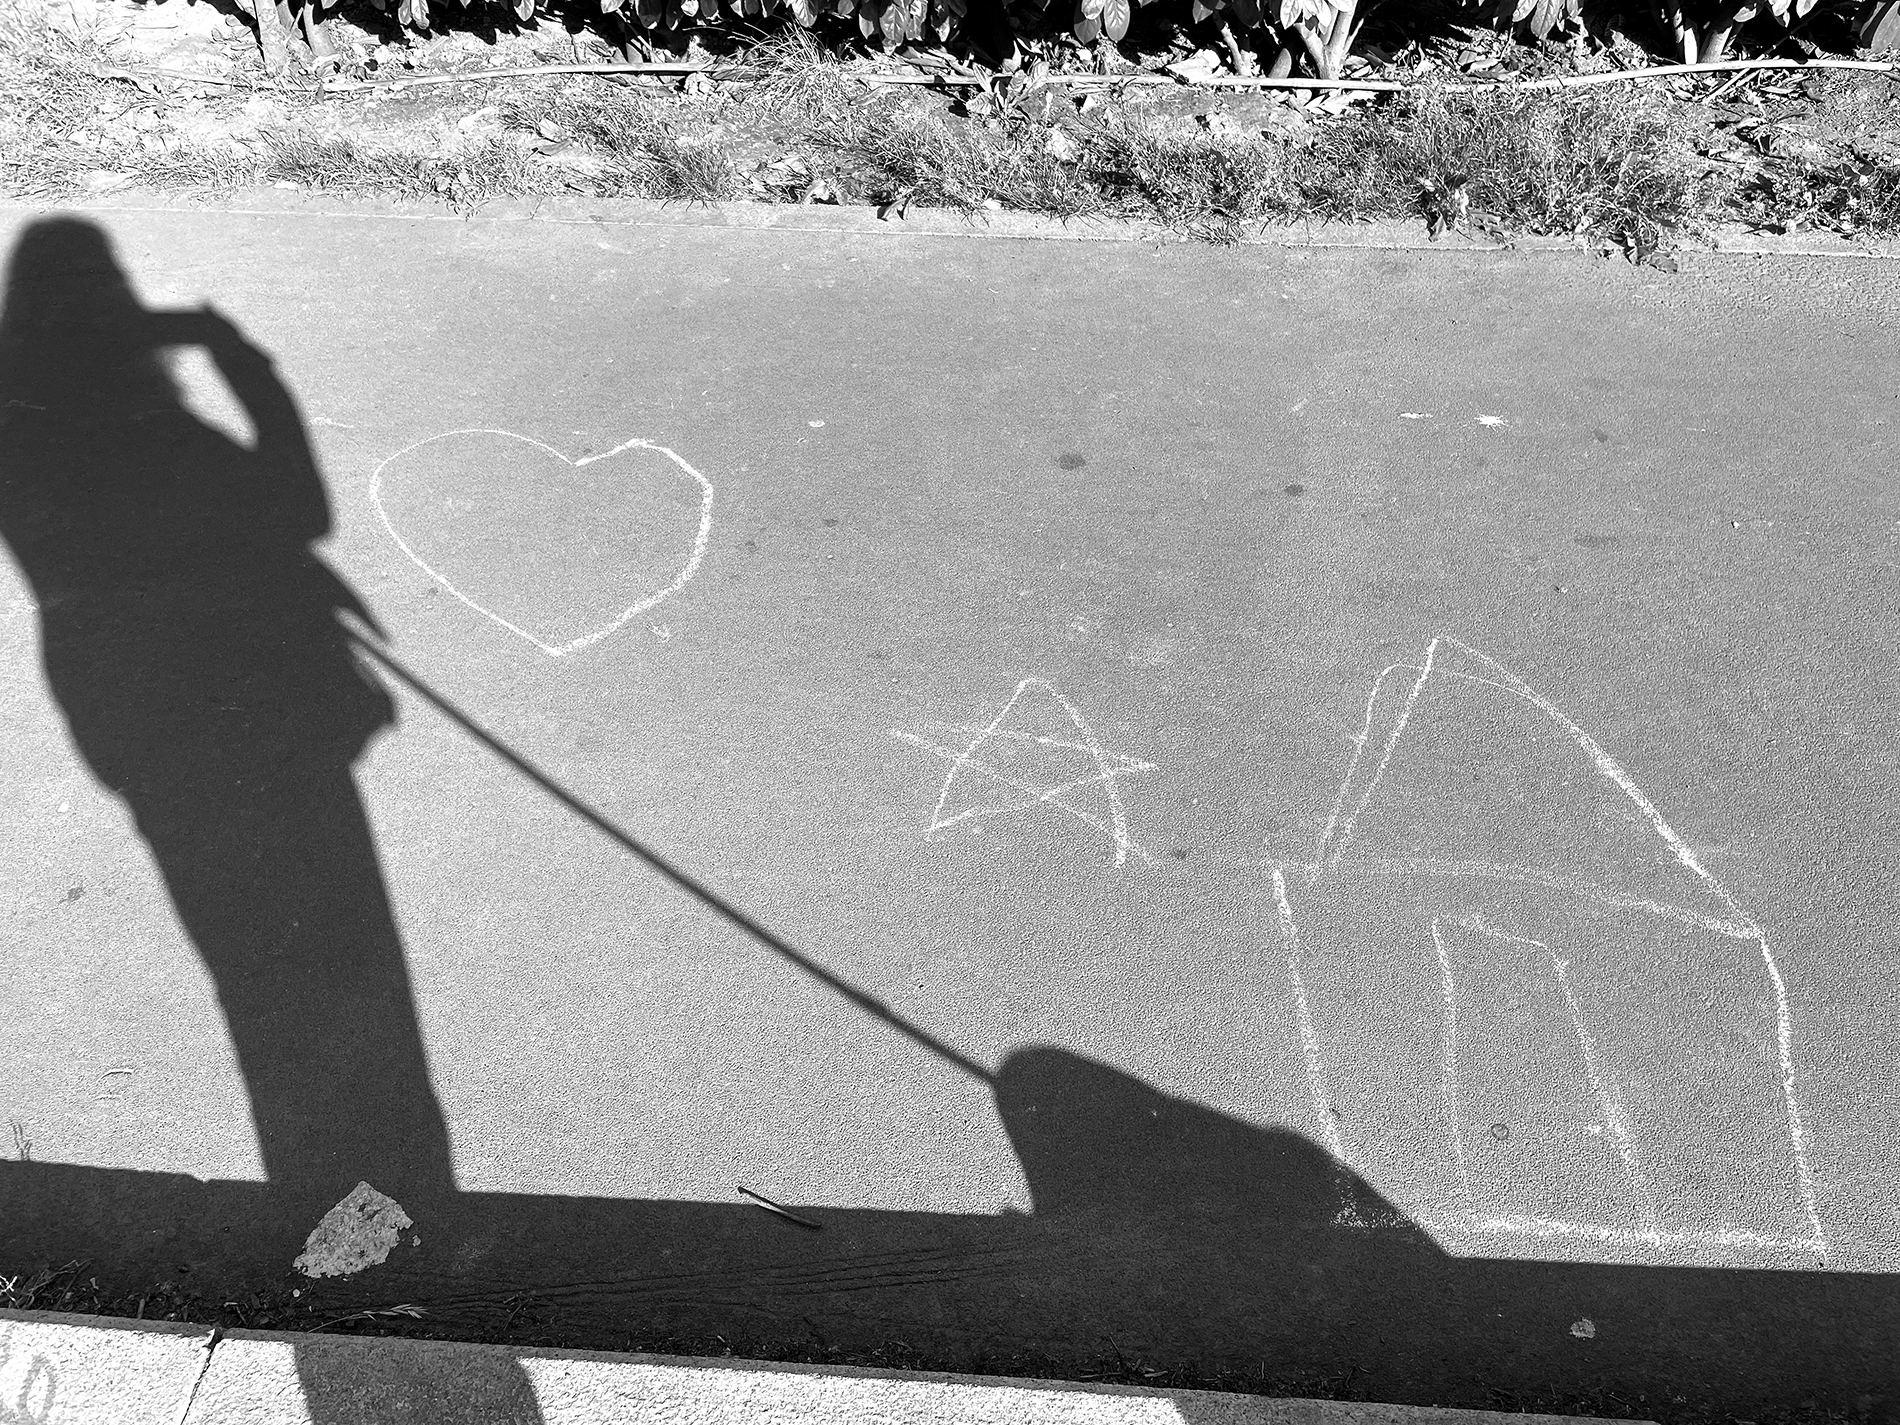 12 maggio 2022. Autoritratto con cane e disegno di bambino/a in gesso. Rappresenta una casa, una stella e un cuore, nei giardini di Via Benedetto Marcello a Milano.